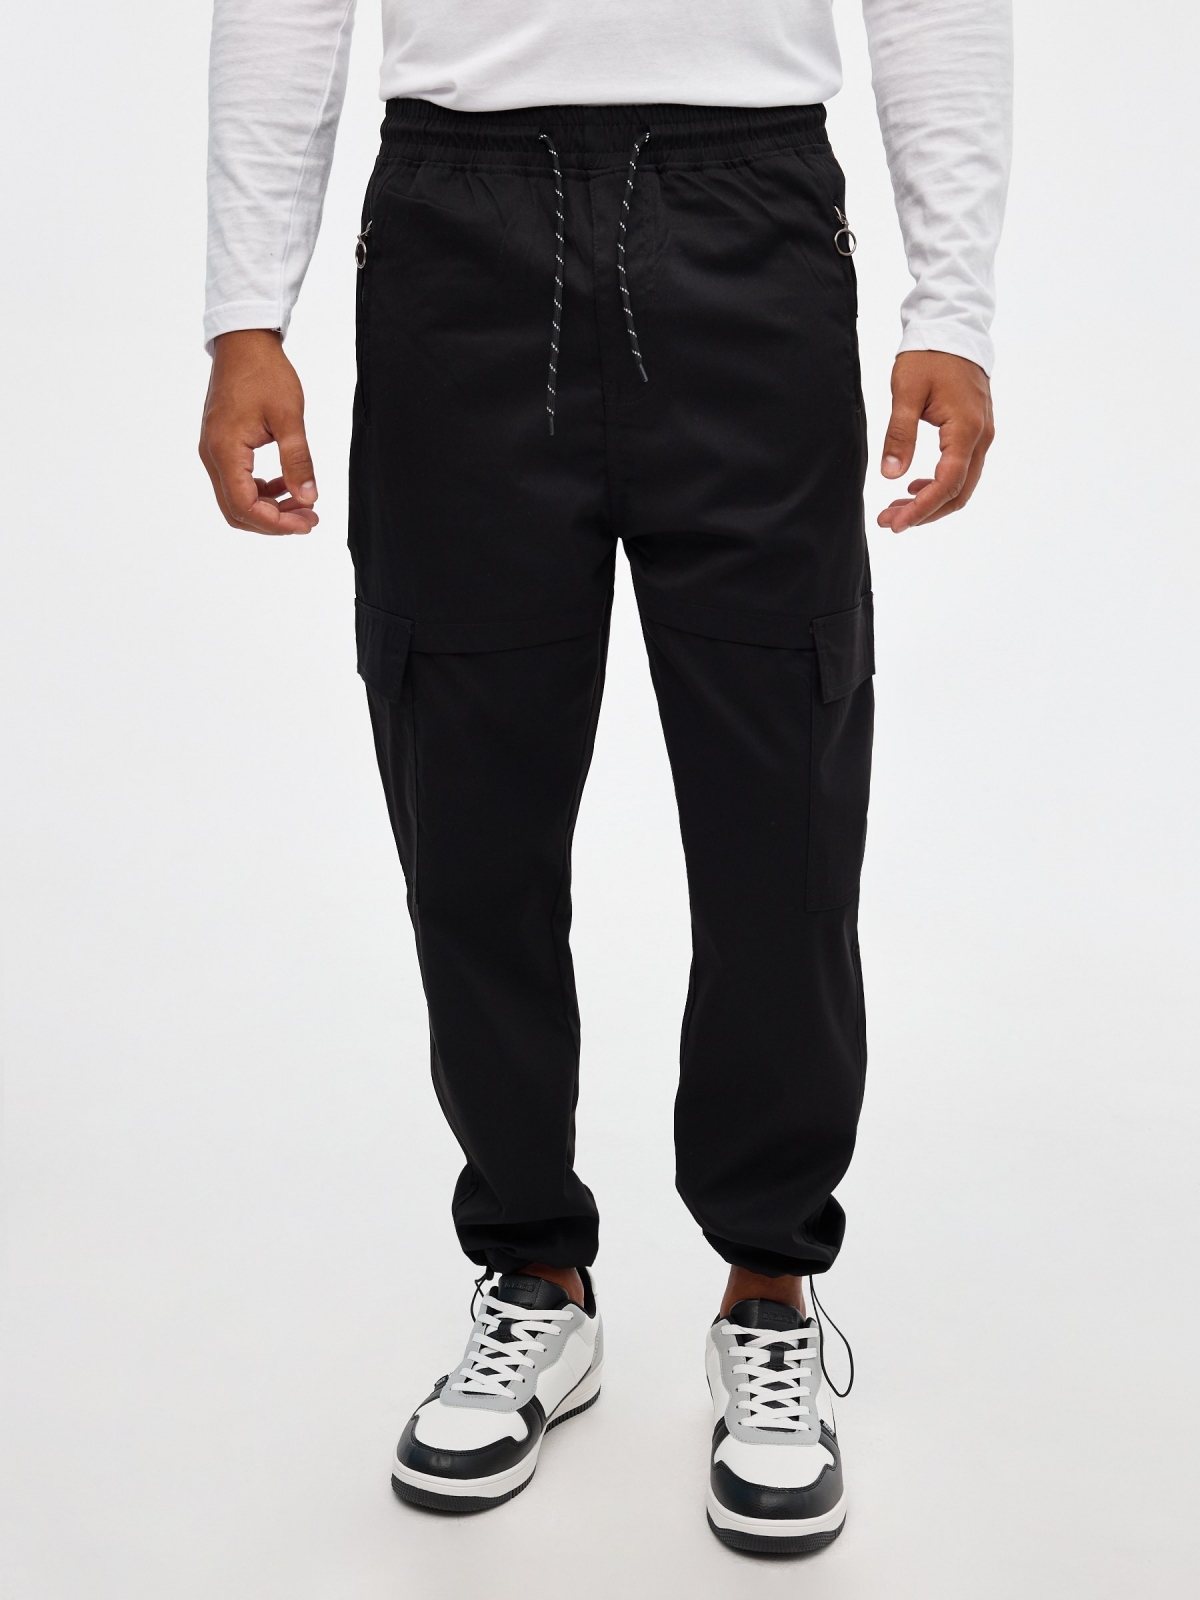 Pantalón jogger tobillos ajustables negro vista media frontal